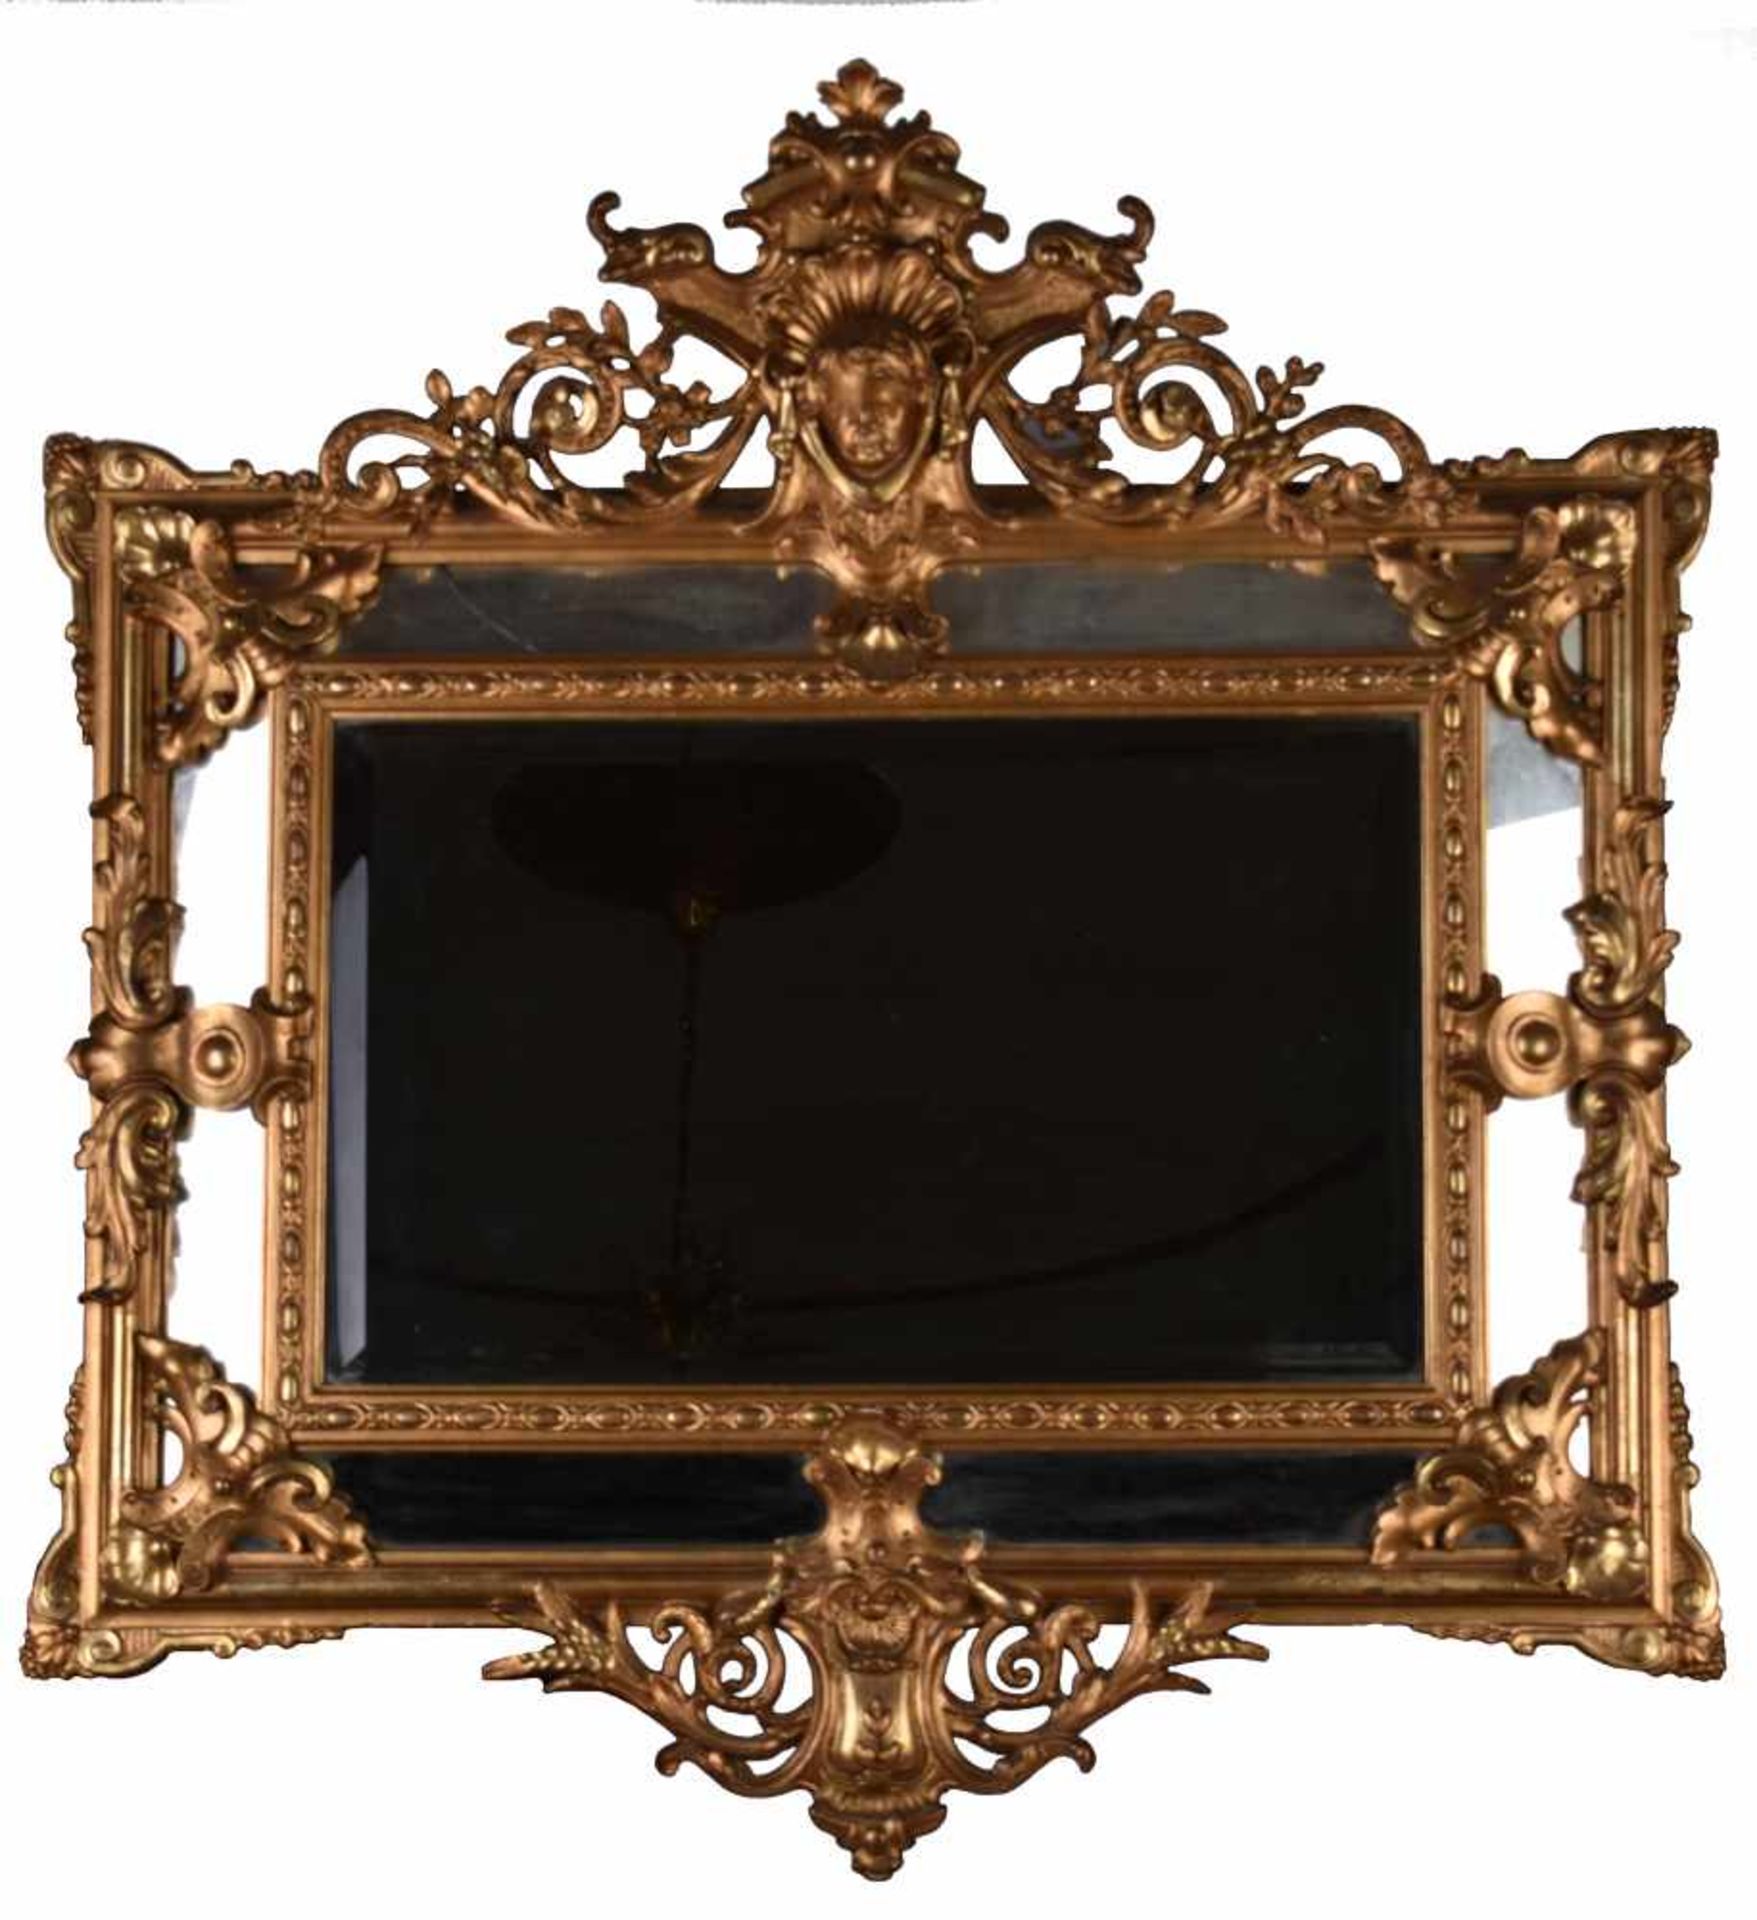 Pomp mirror around 1860 / 80